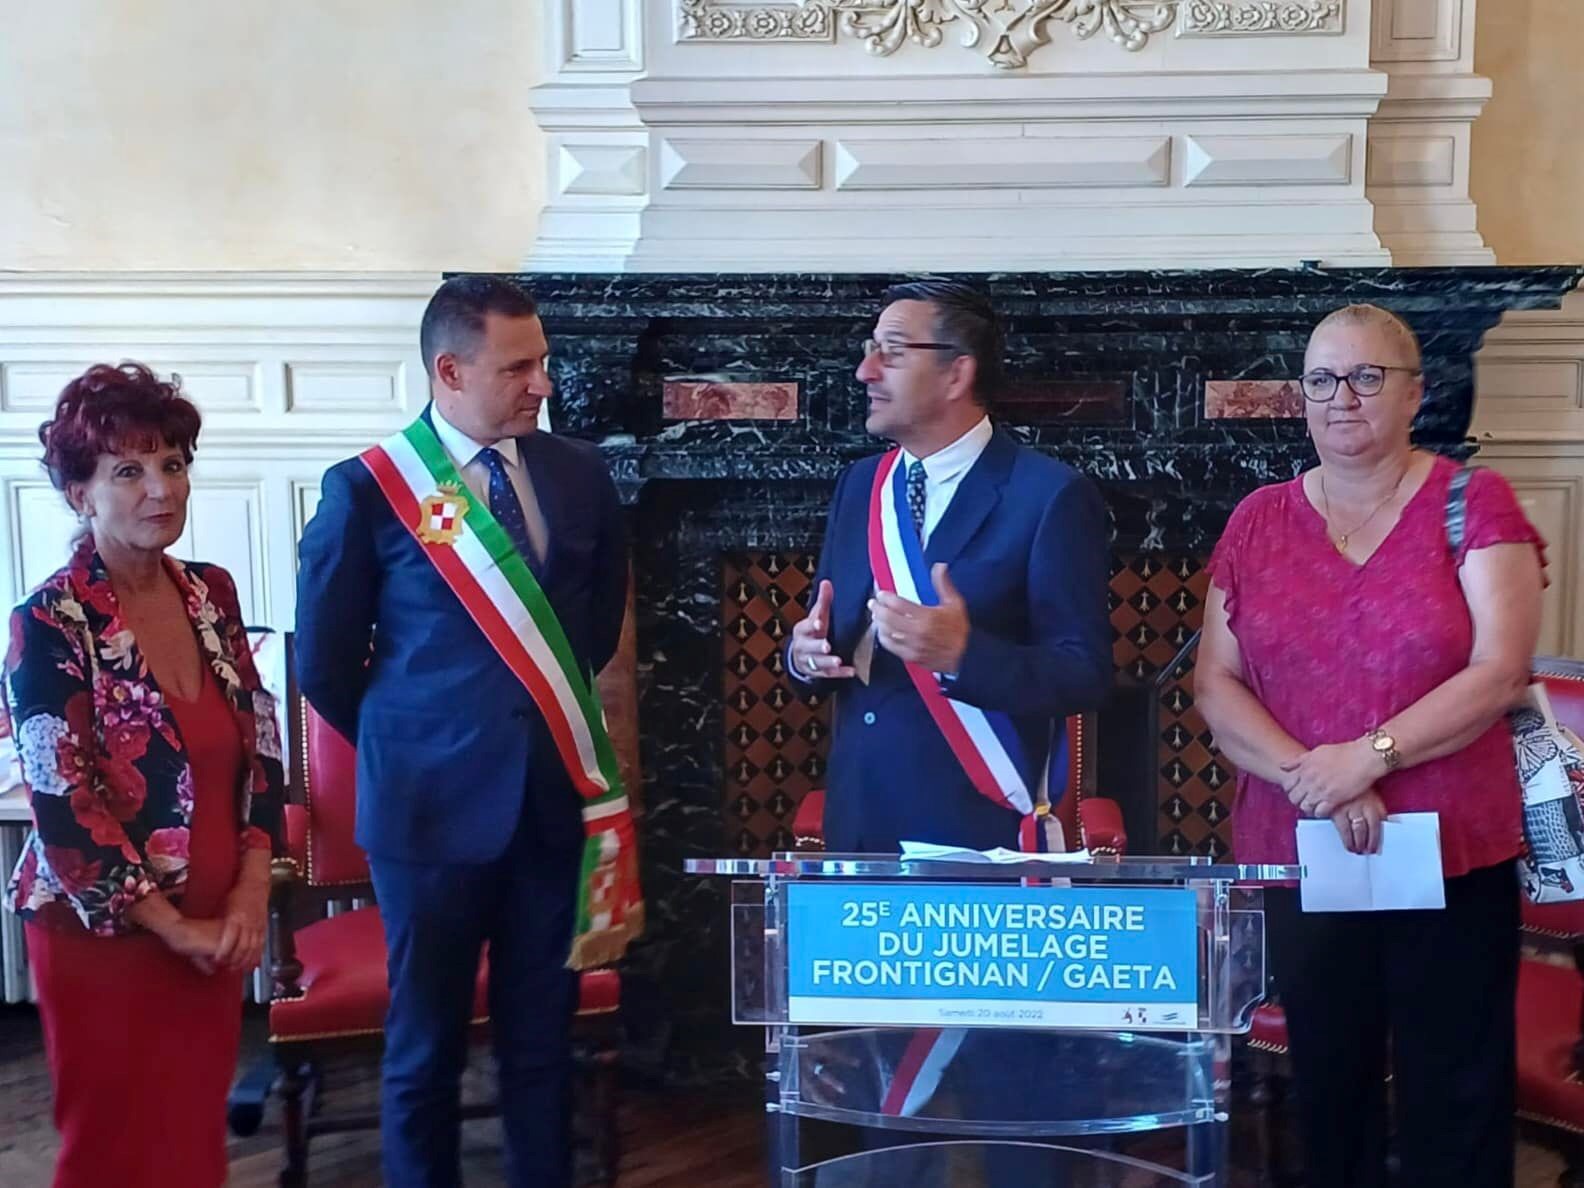 Frontignan La Peyrade e Gaeta, celebrato il 25° anniversario del gemellaggio